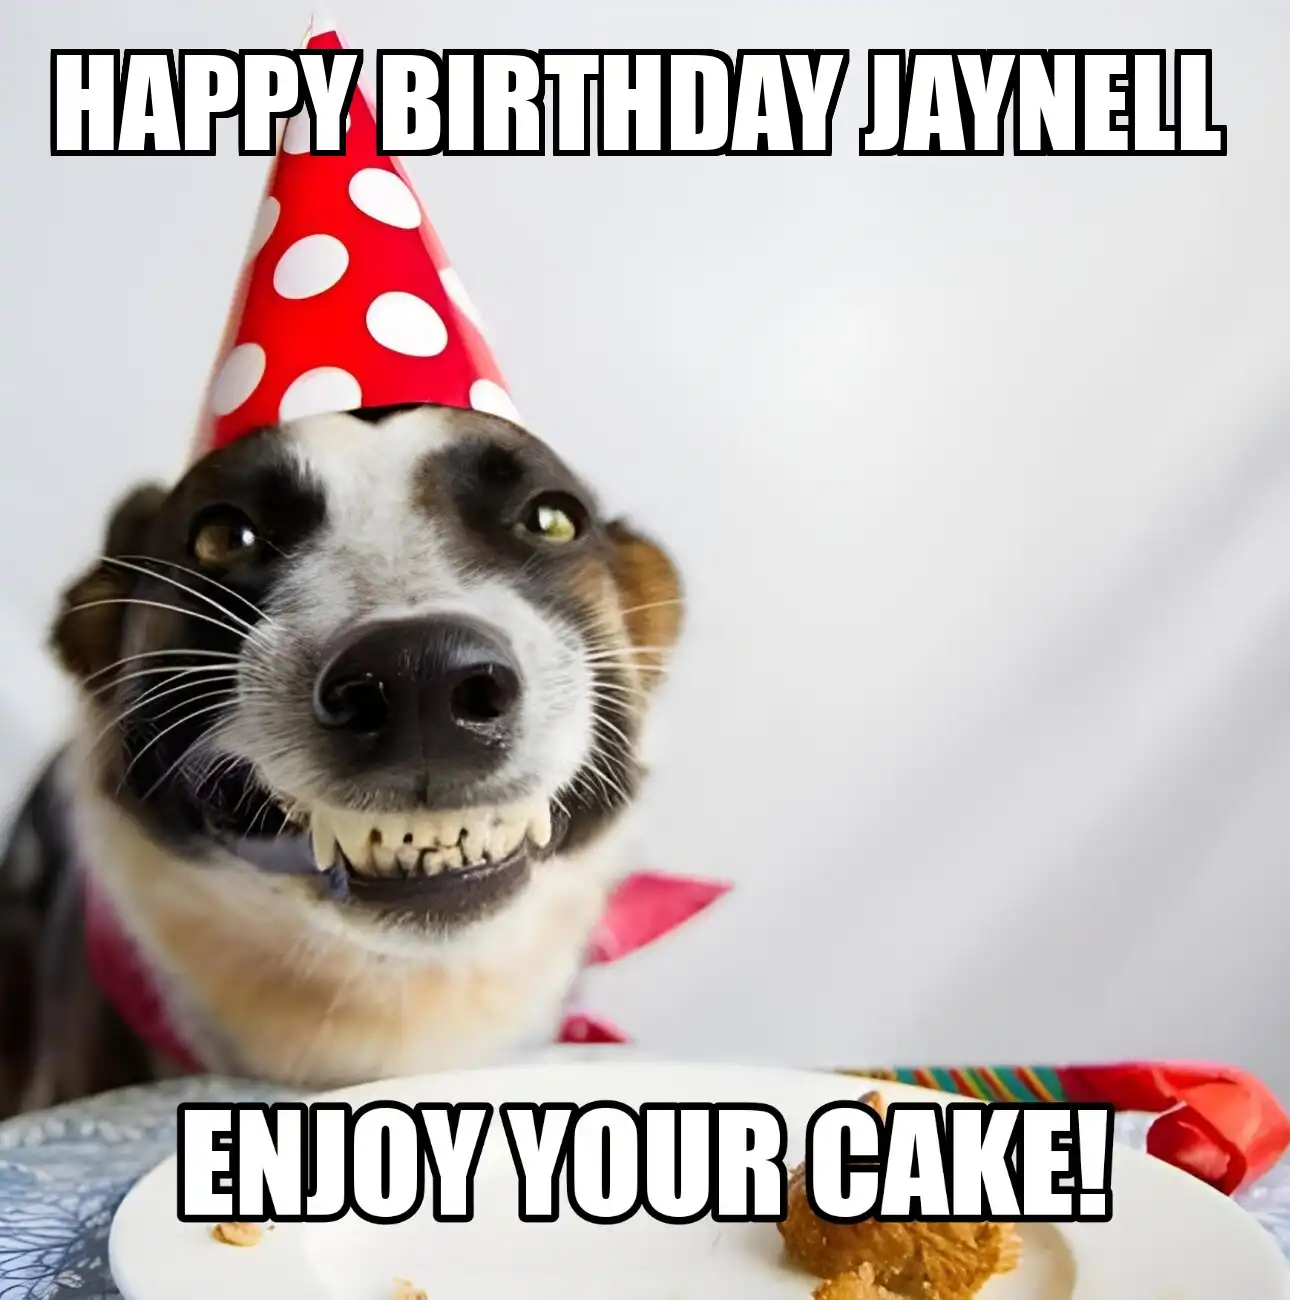 Happy Birthday Jaynell Enjoy Your Cake Dog Meme